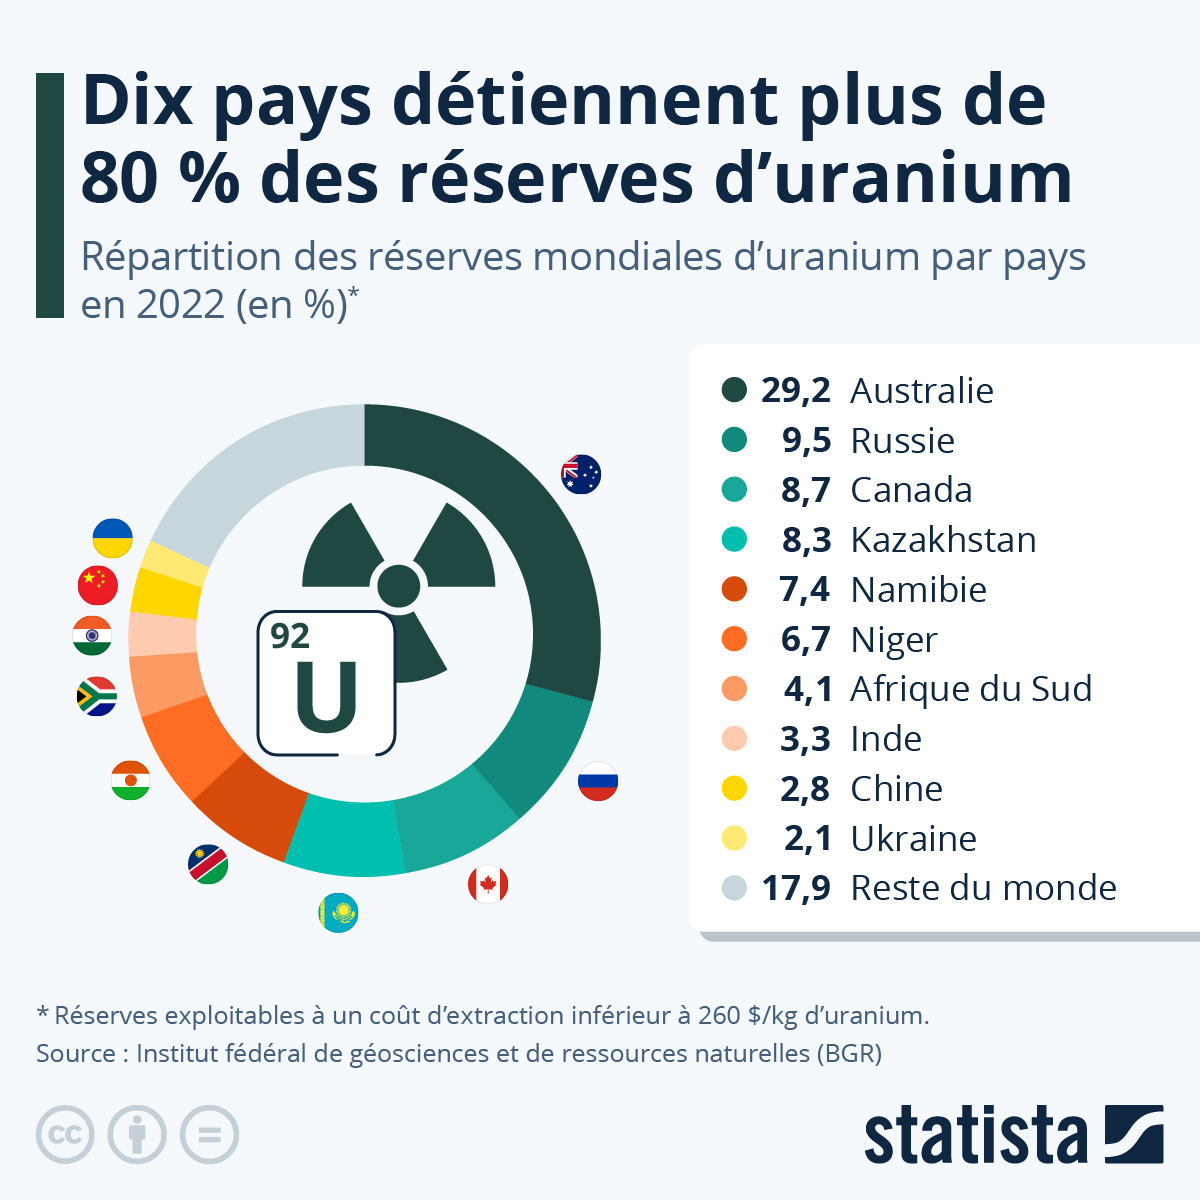 quels pays détiennent les plus grandes réserves d'uranium ?